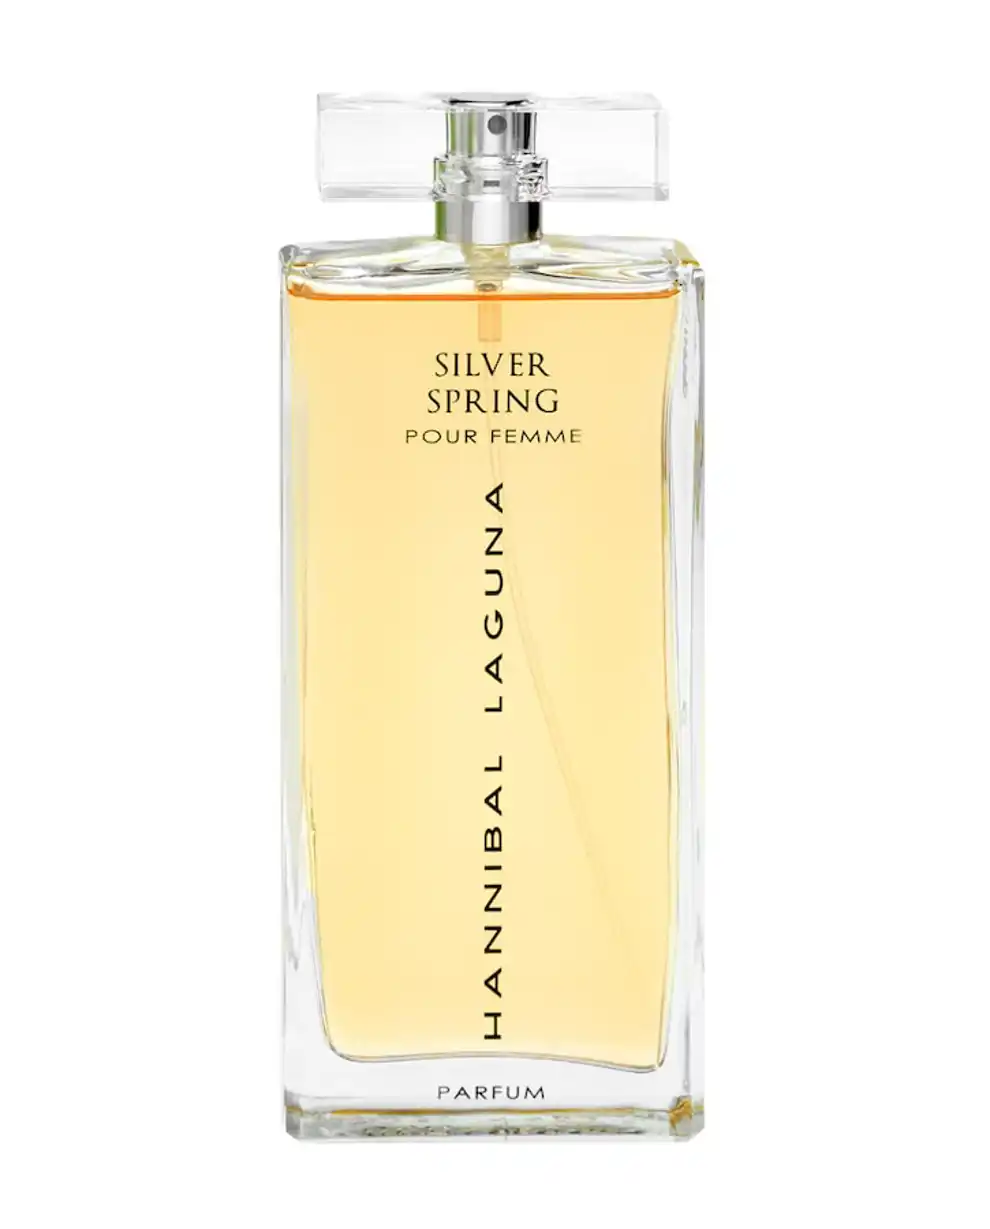 Perfumes baratos: Silver Spring de Hannibal Laguna